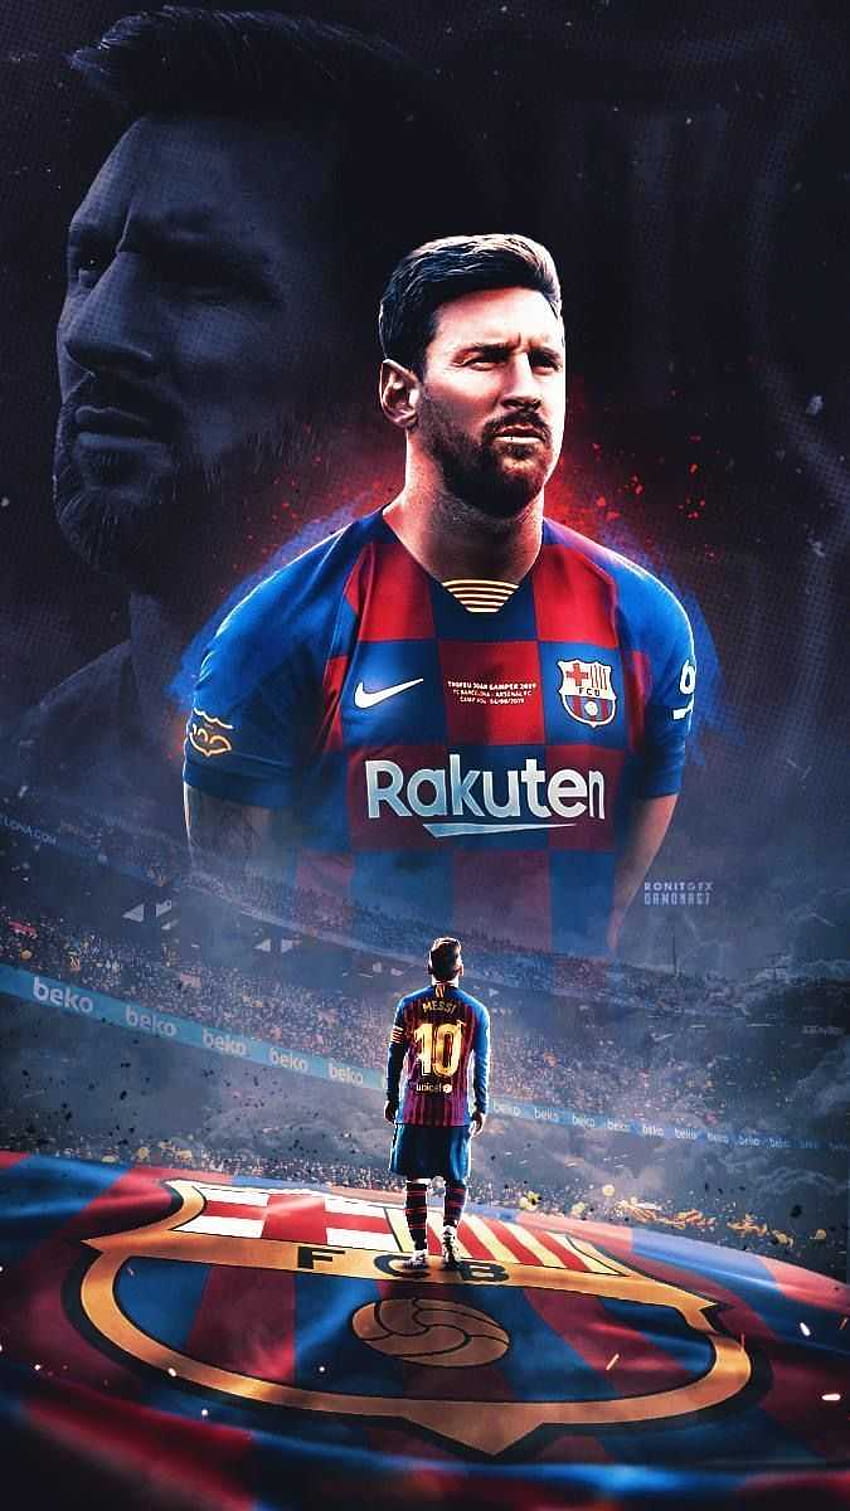 Cảm nhận tài năng của Messi thông qua bức hình nền đầy mê hoặc này trên điện thoại của bạn. Với hình ảnh có chất lượng HD, bạn sẽ cảm nhận được sự chân thực của Messi trên điện thoại của mình, một cách đầy hoài nghiền.